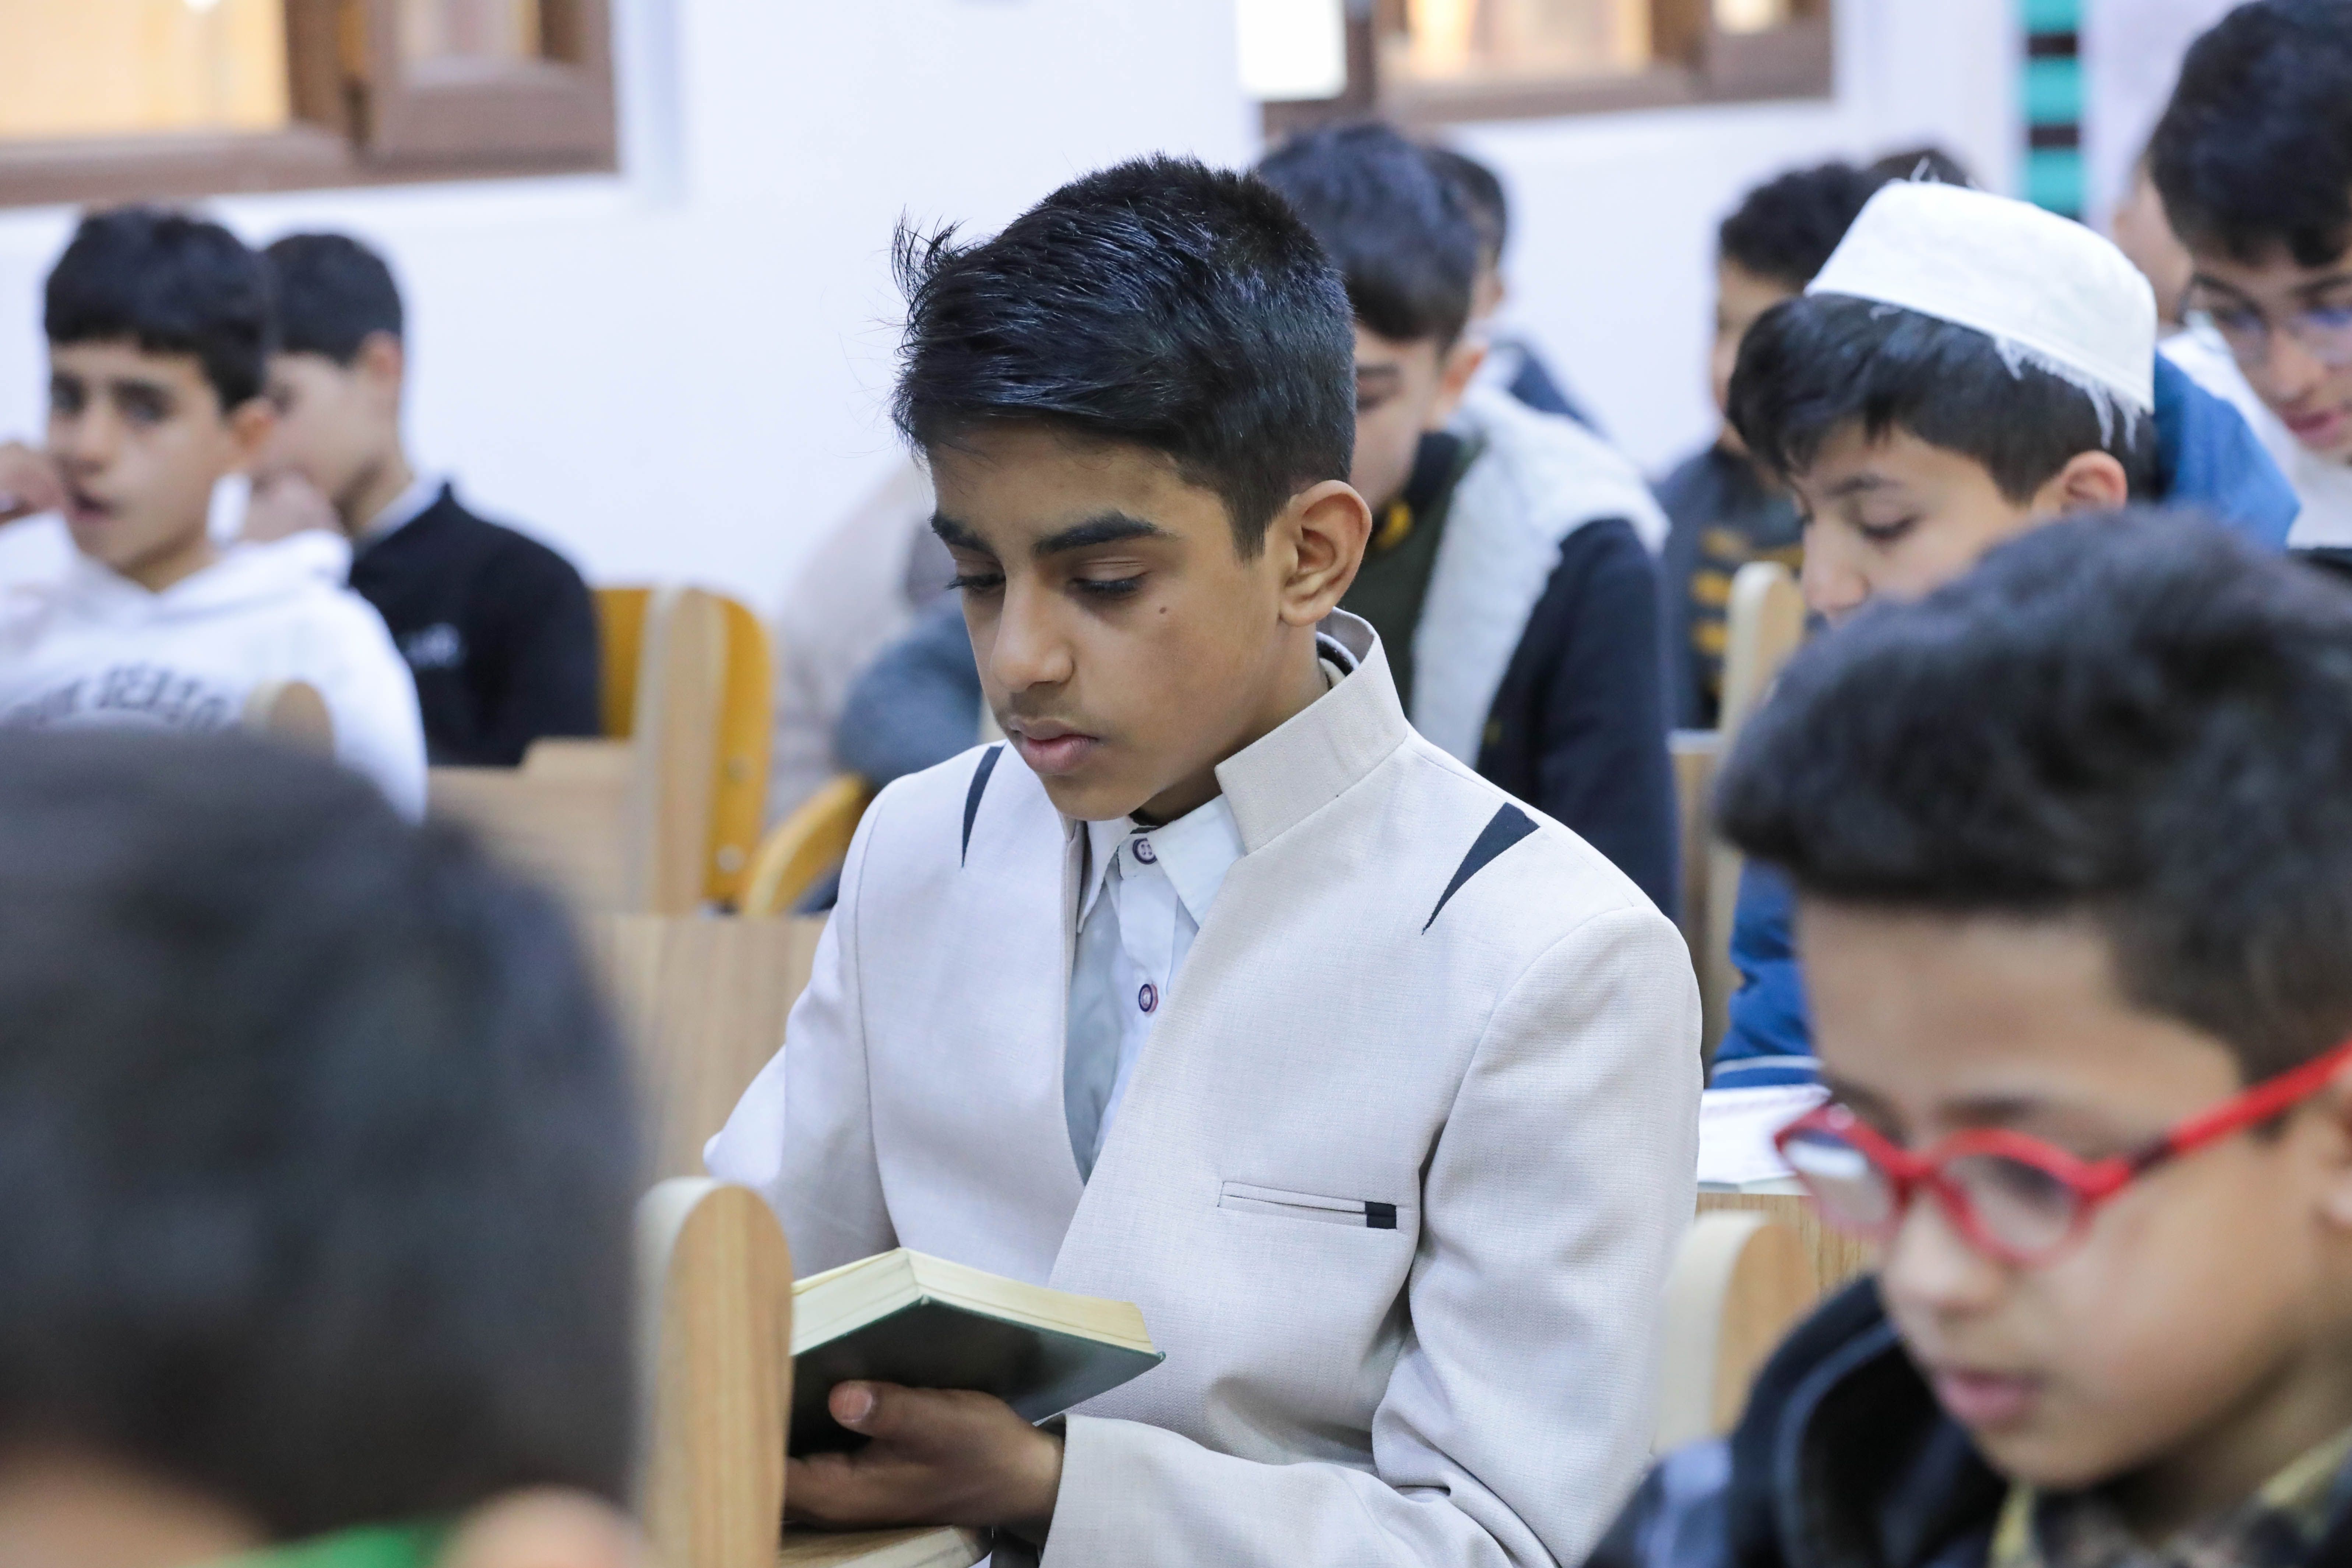 طلبة مشروع حفظ القرآن الكريم يشاركون في الاختبار المركزي بكربلاء المقدسة